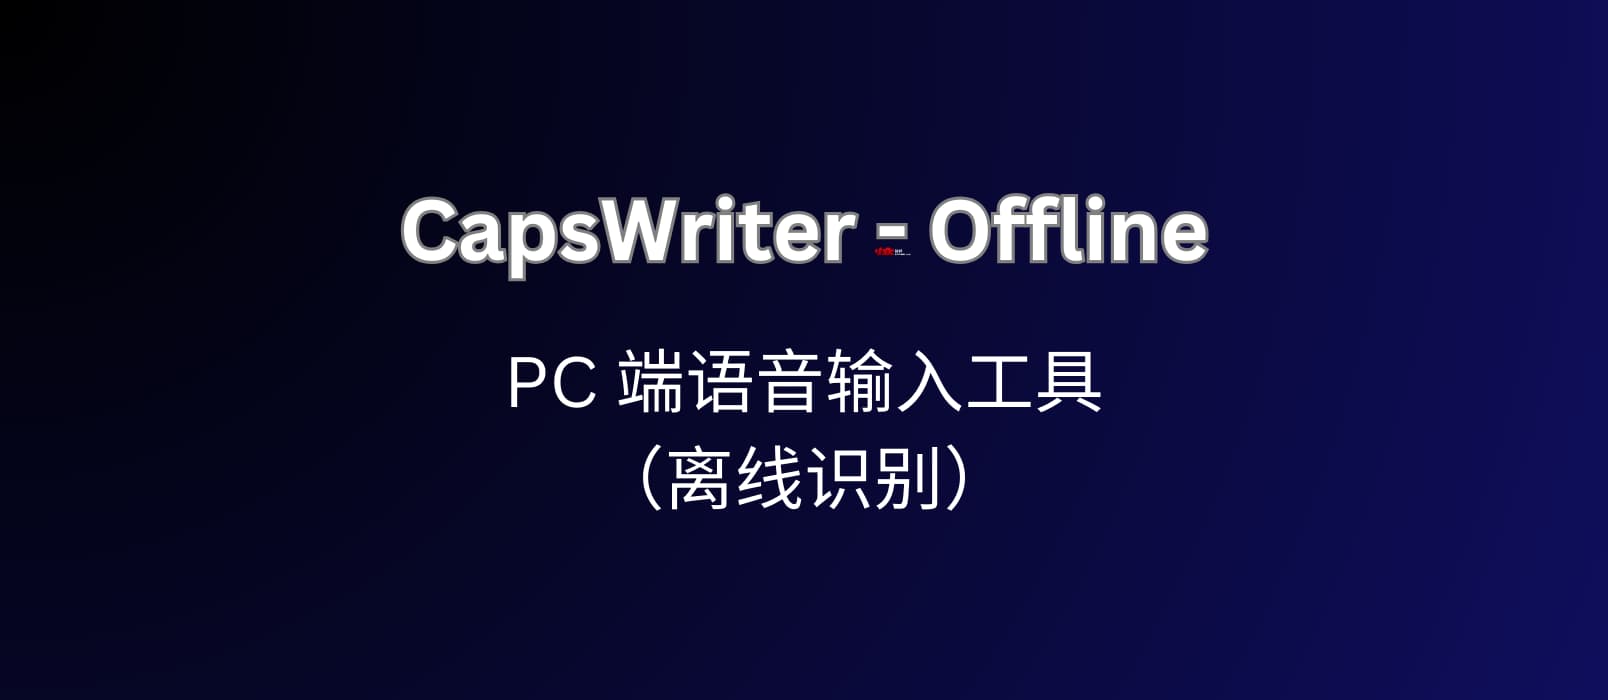 CapsWriter-Offline，可能是最好用的 PC 端语音输入工具（离线识别） 